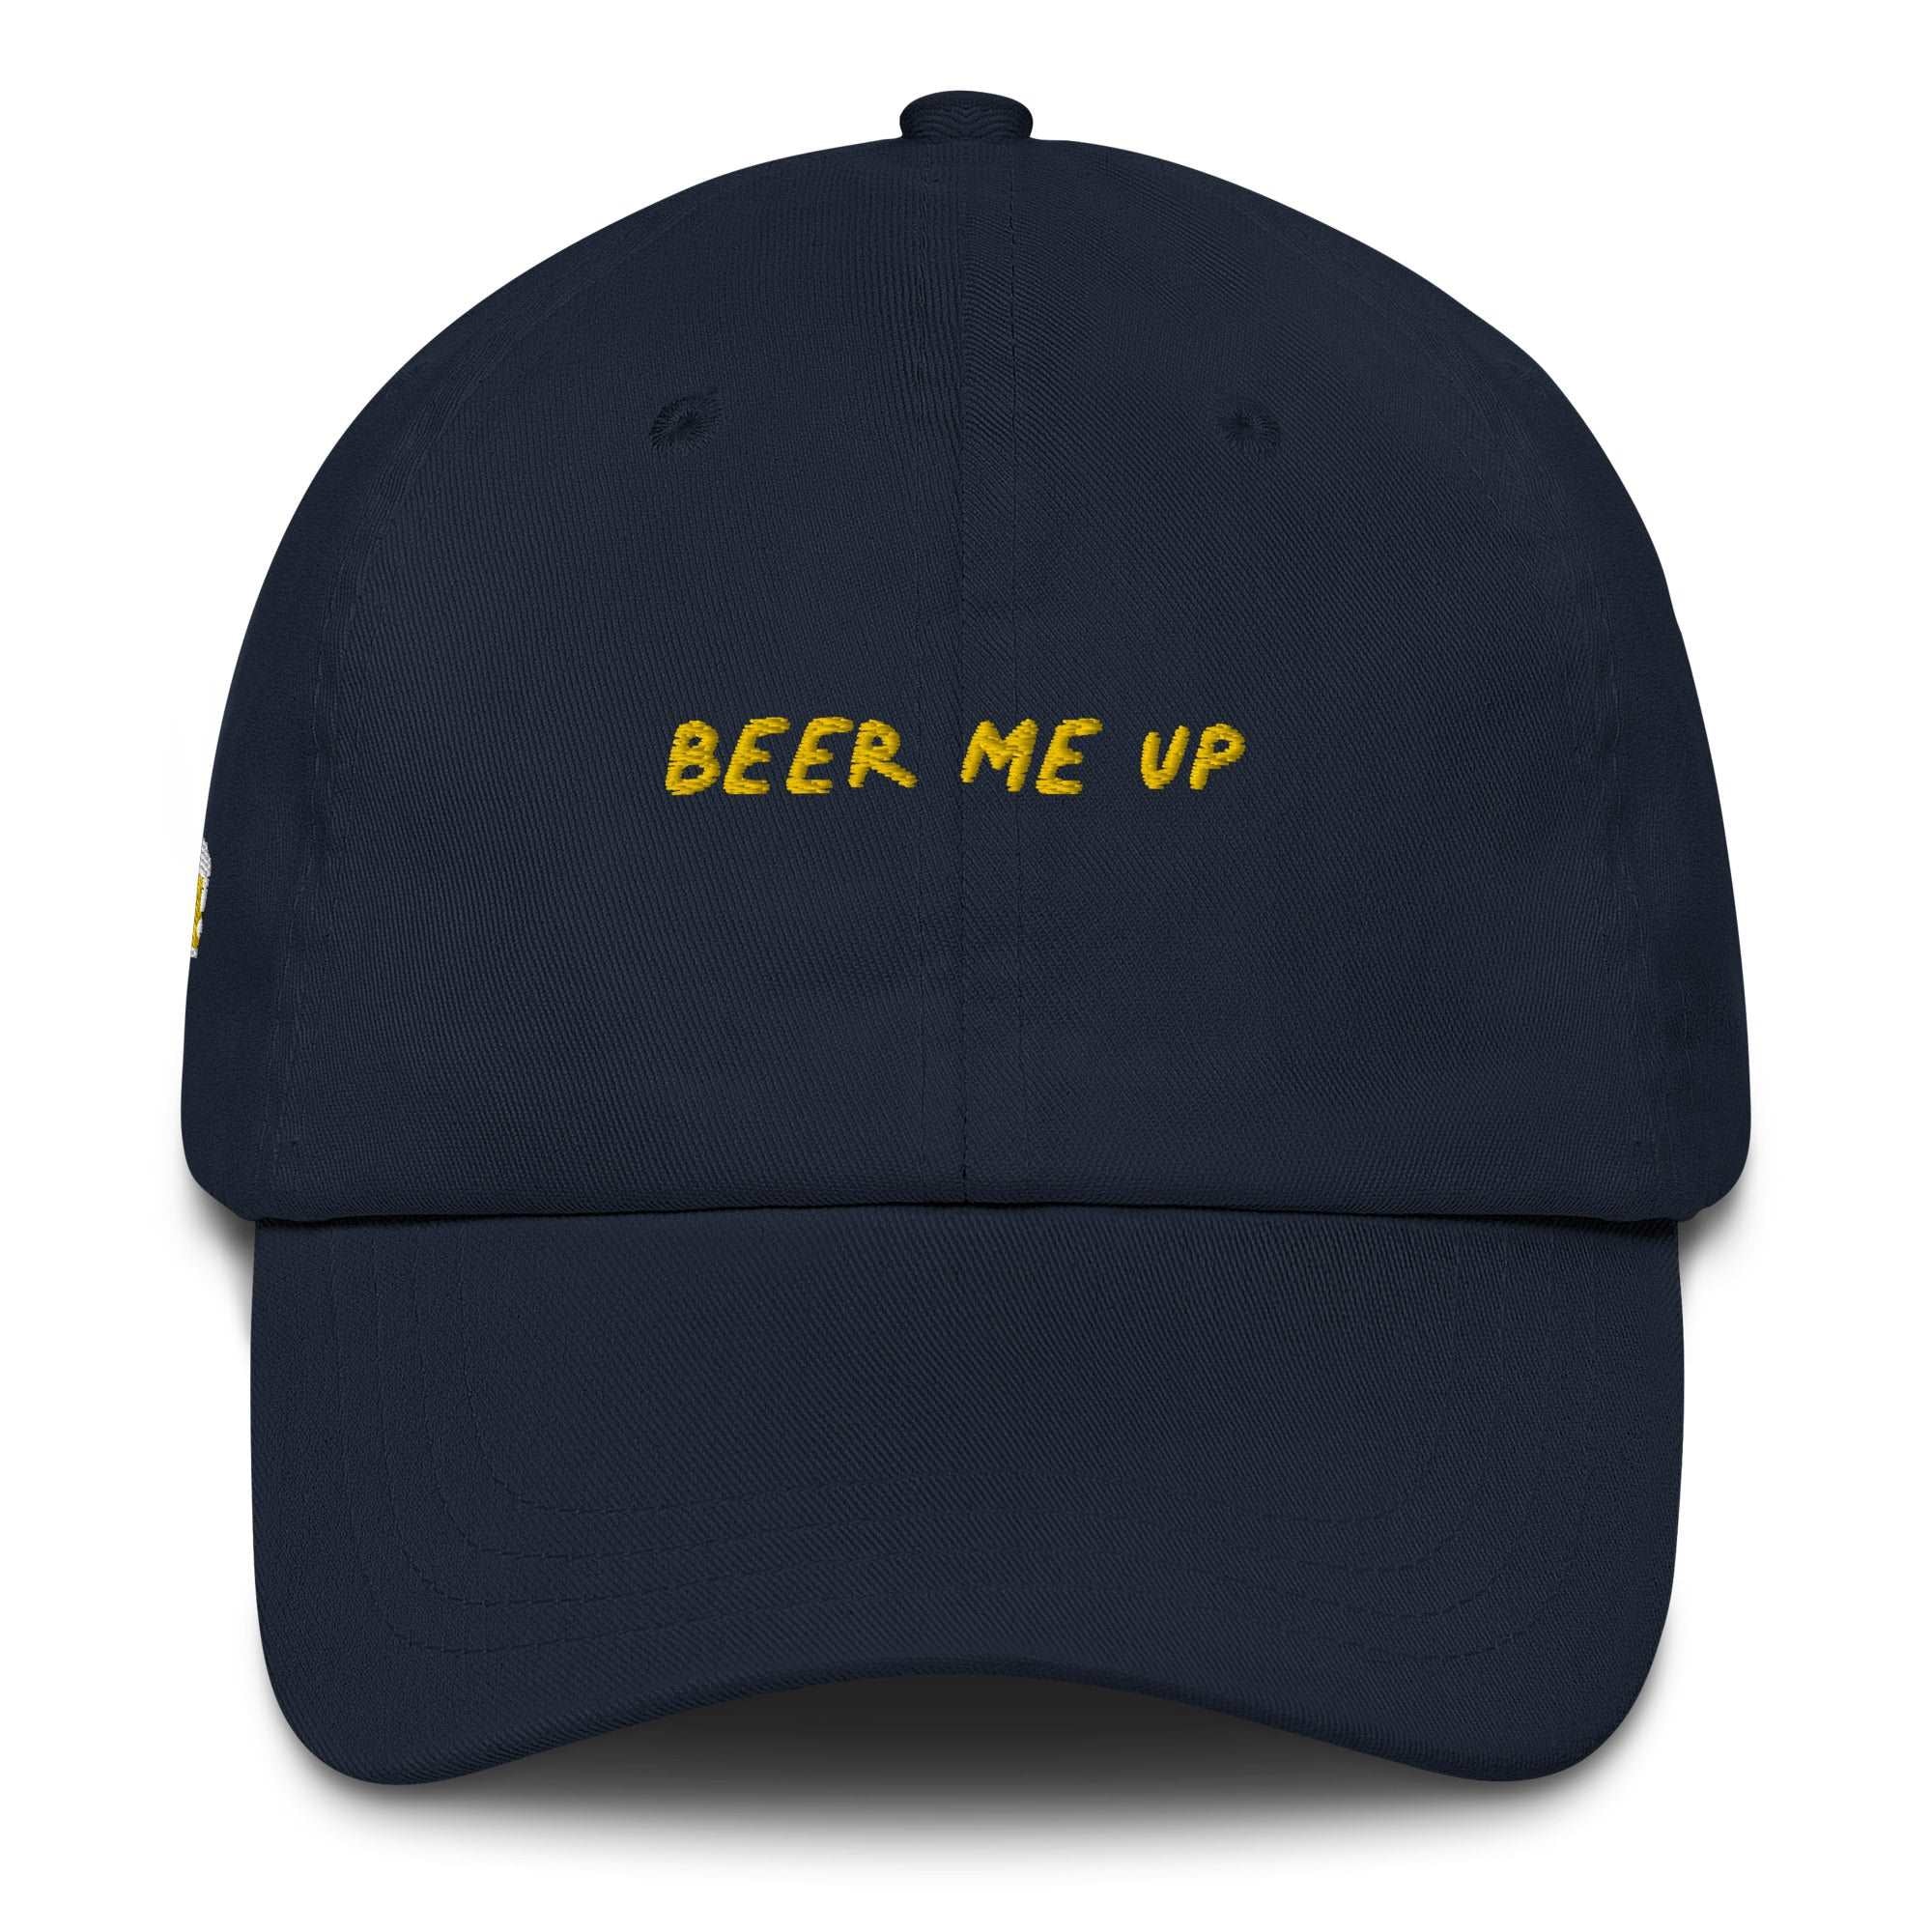 Beer me up - Cap